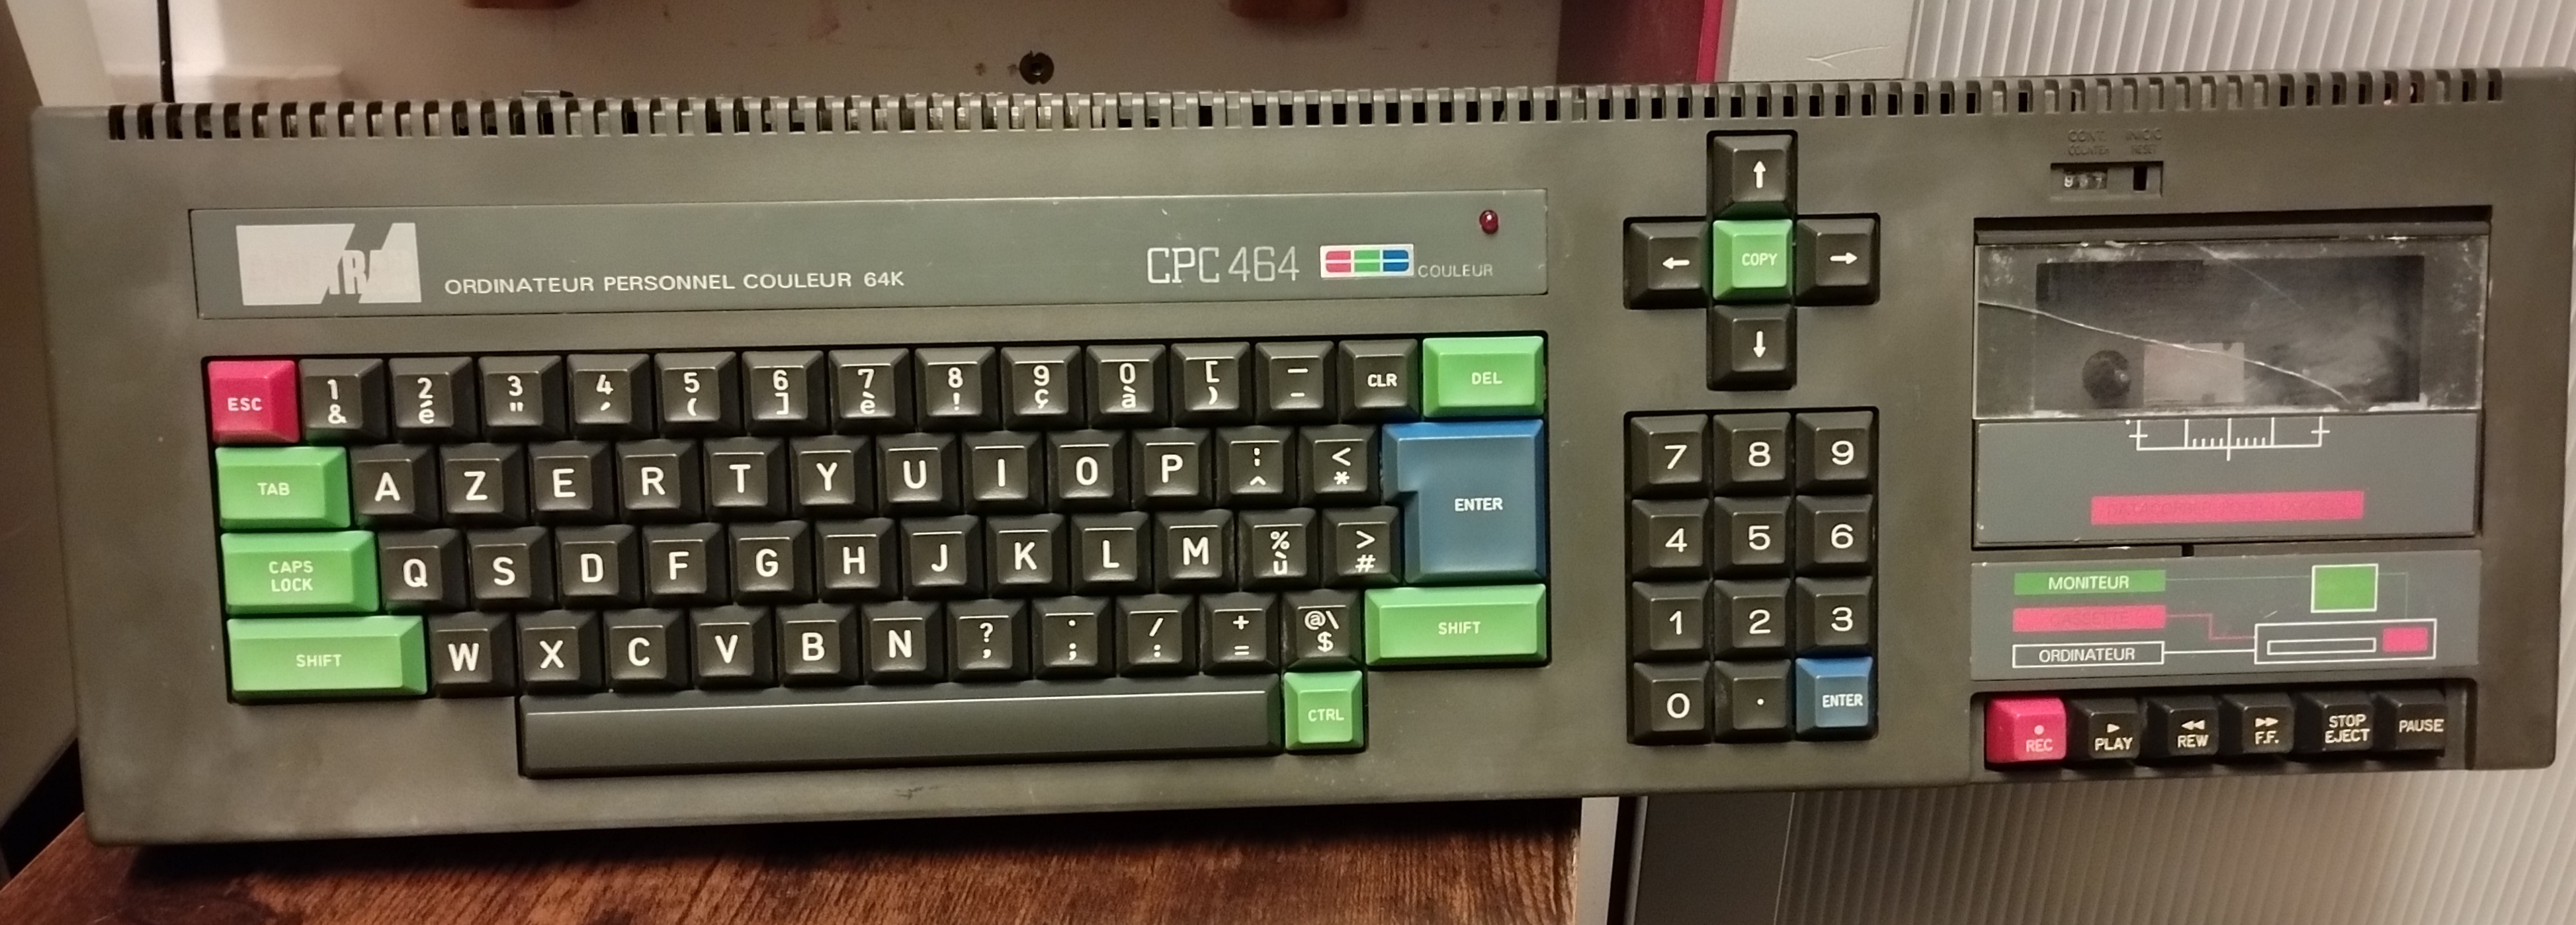 [Trouvé] Amstrad CPC464 avec adaptateur péritel  - Page 2 Arop